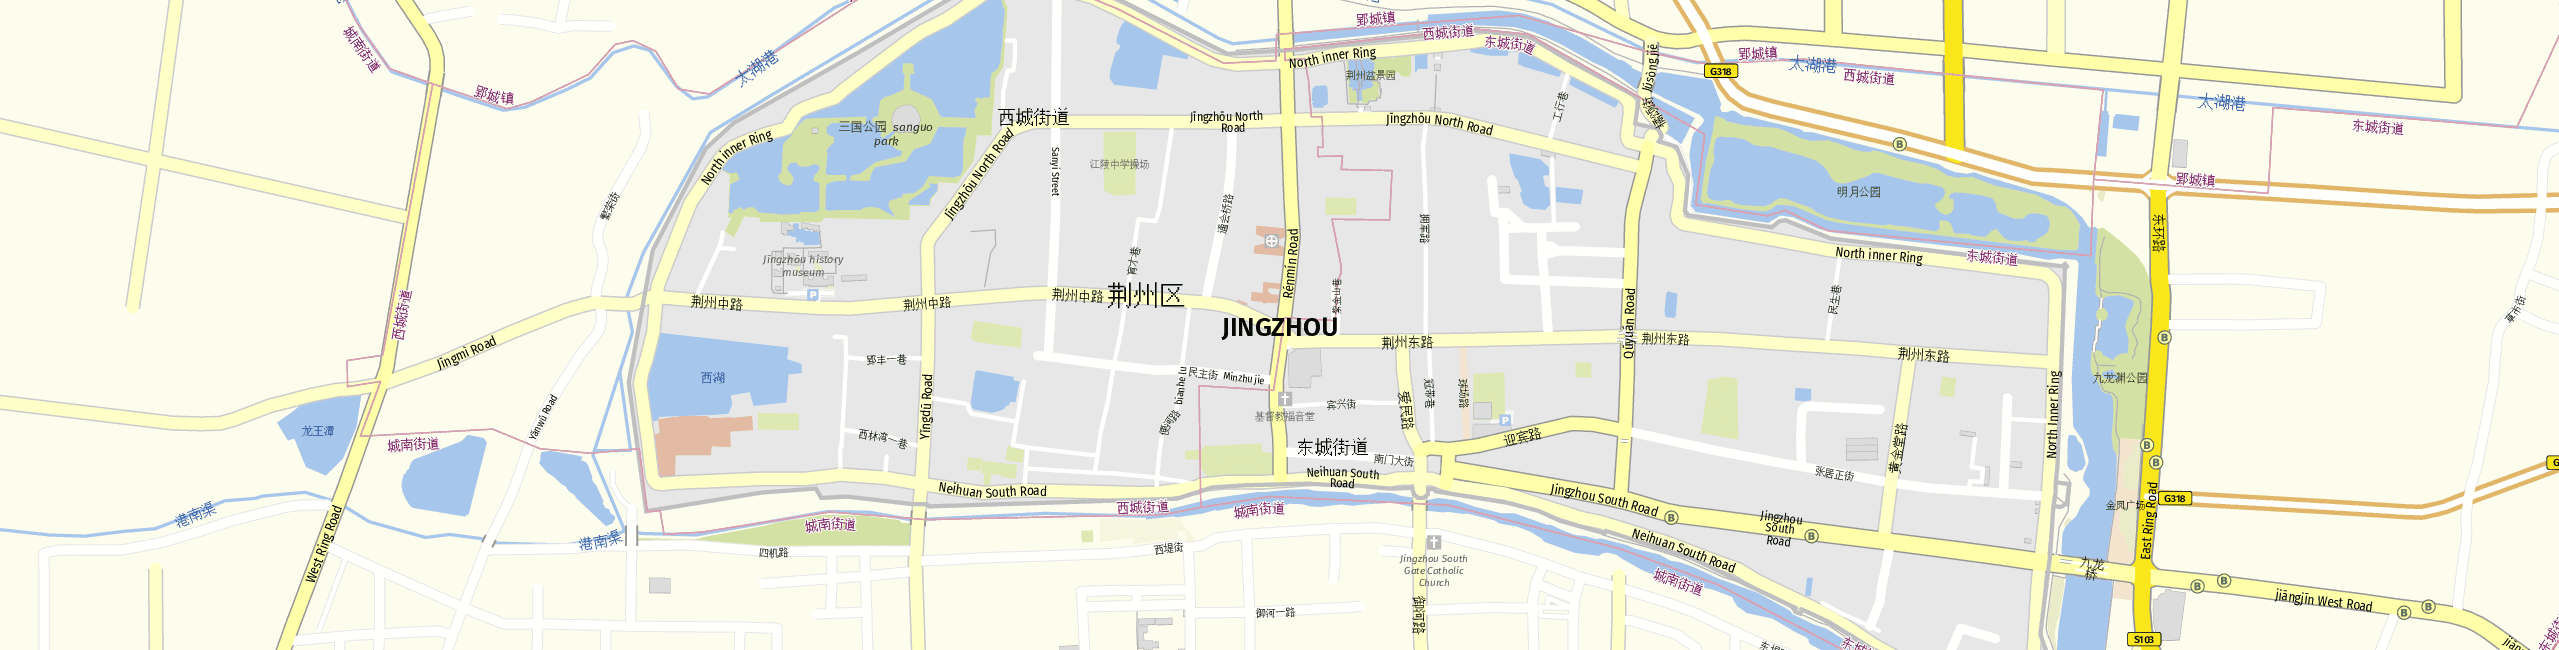 Stadtplan Jīngzhōu City zum Downloaden.